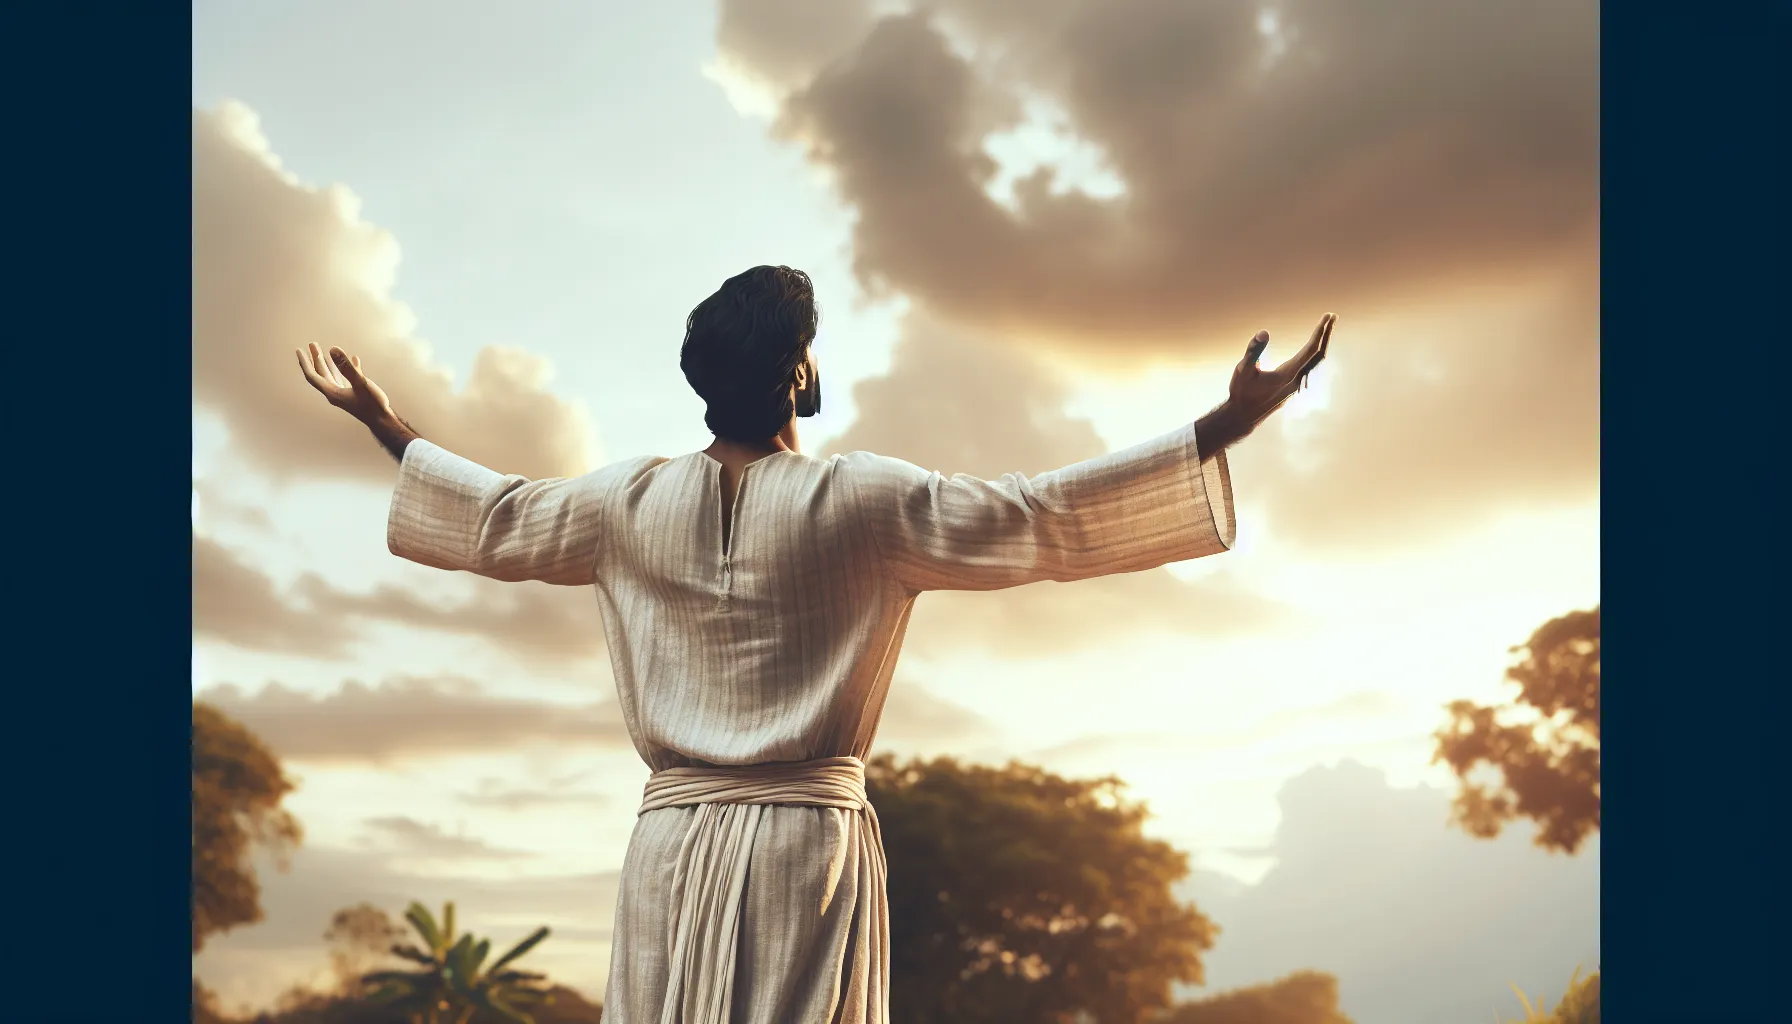 'Imagen de una persona con los brazos abiertos mirando hacia el cielo, representando entrega y conexión espiritual con Dios'.